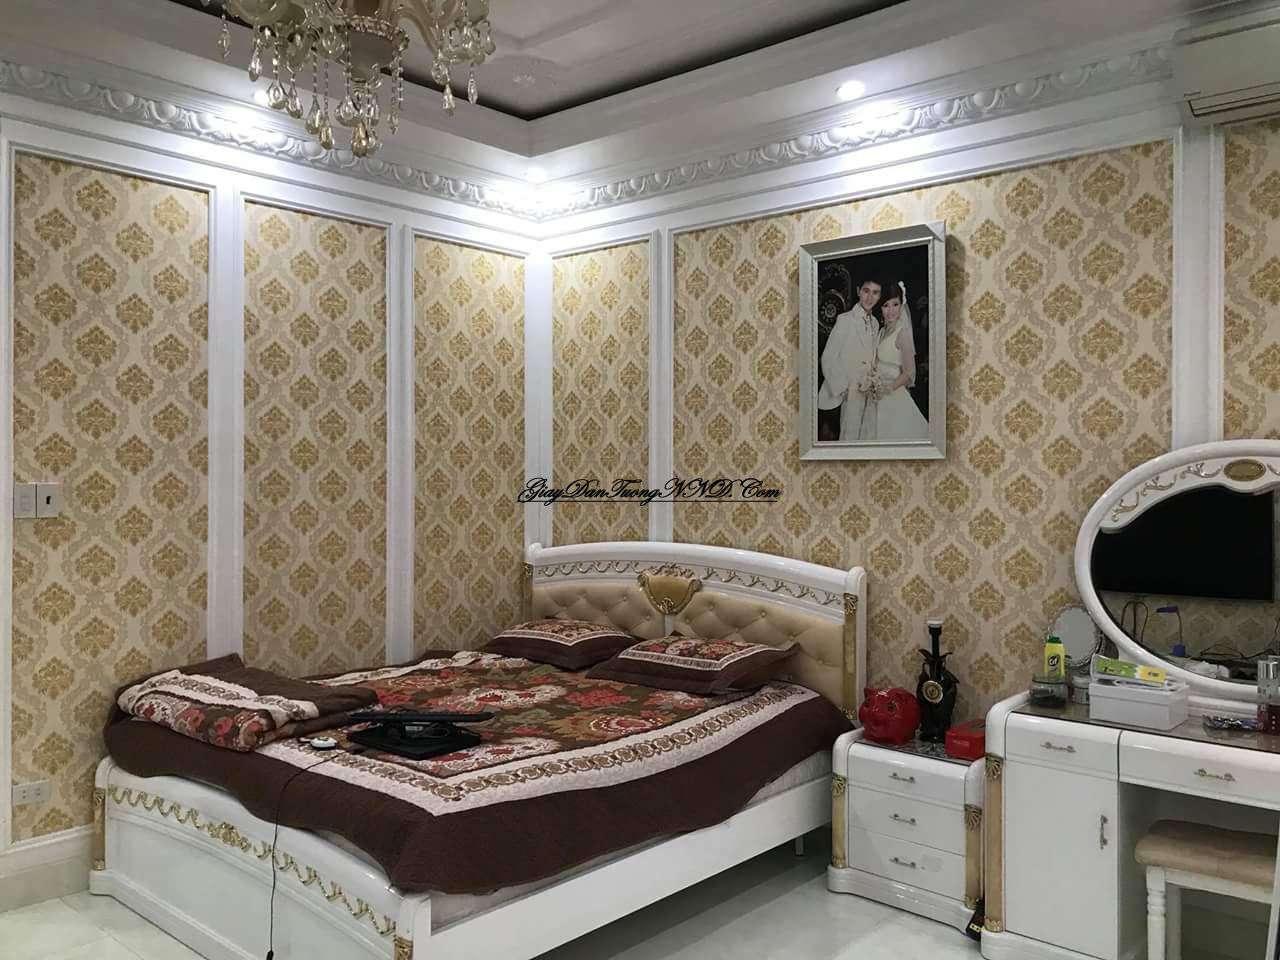 Chọn mẫu giấy dán tường màu vàng cho phòng ngủ sang trọng